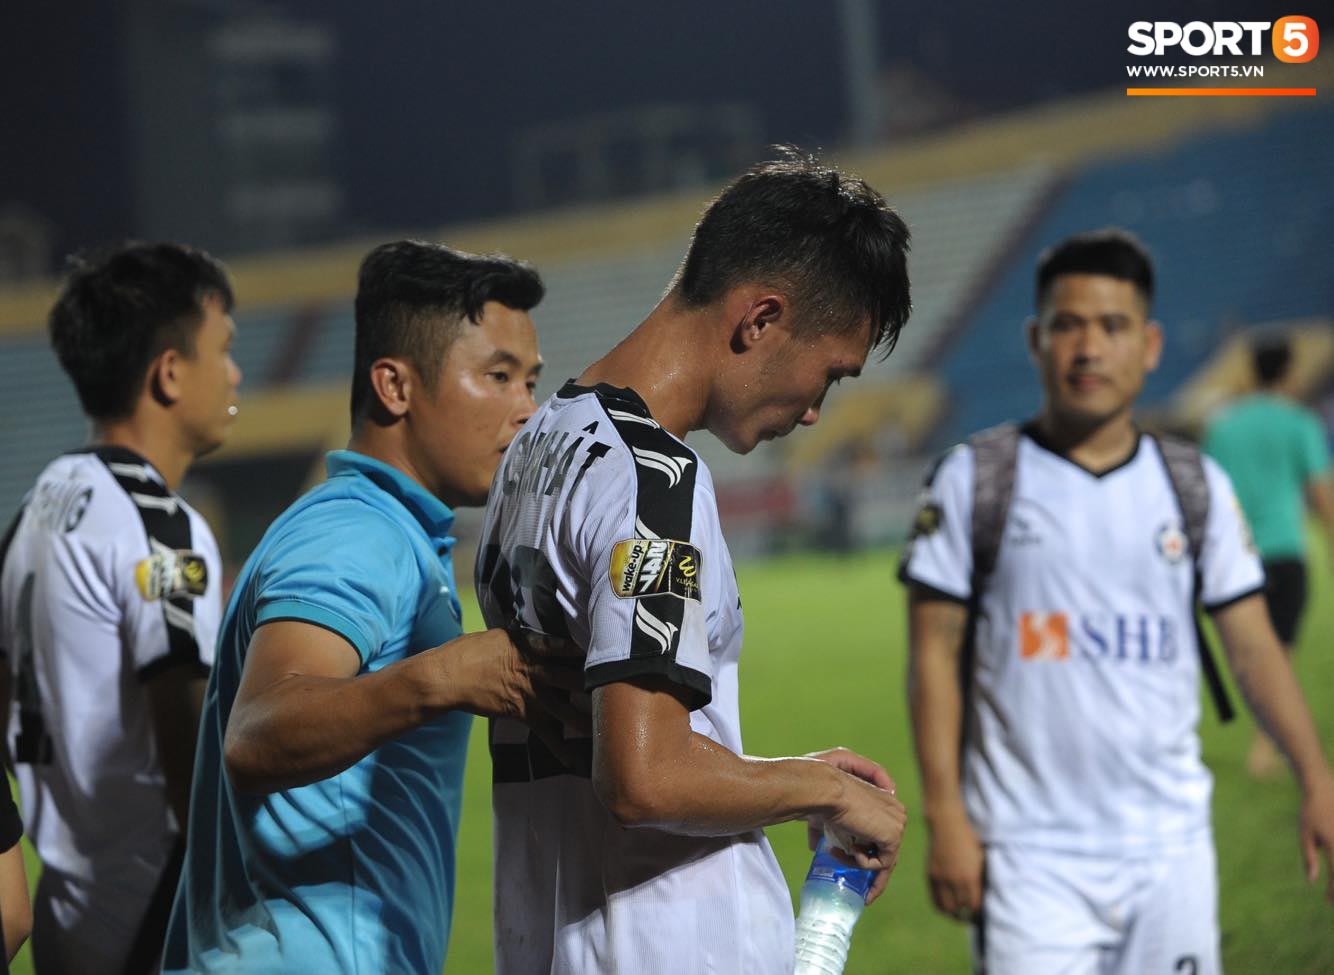 Đức Chinh không nỡ chia tay thầy Lee sau trận đấu với Nam Định tại vòng 13 V.League 2019 - Ảnh 12.